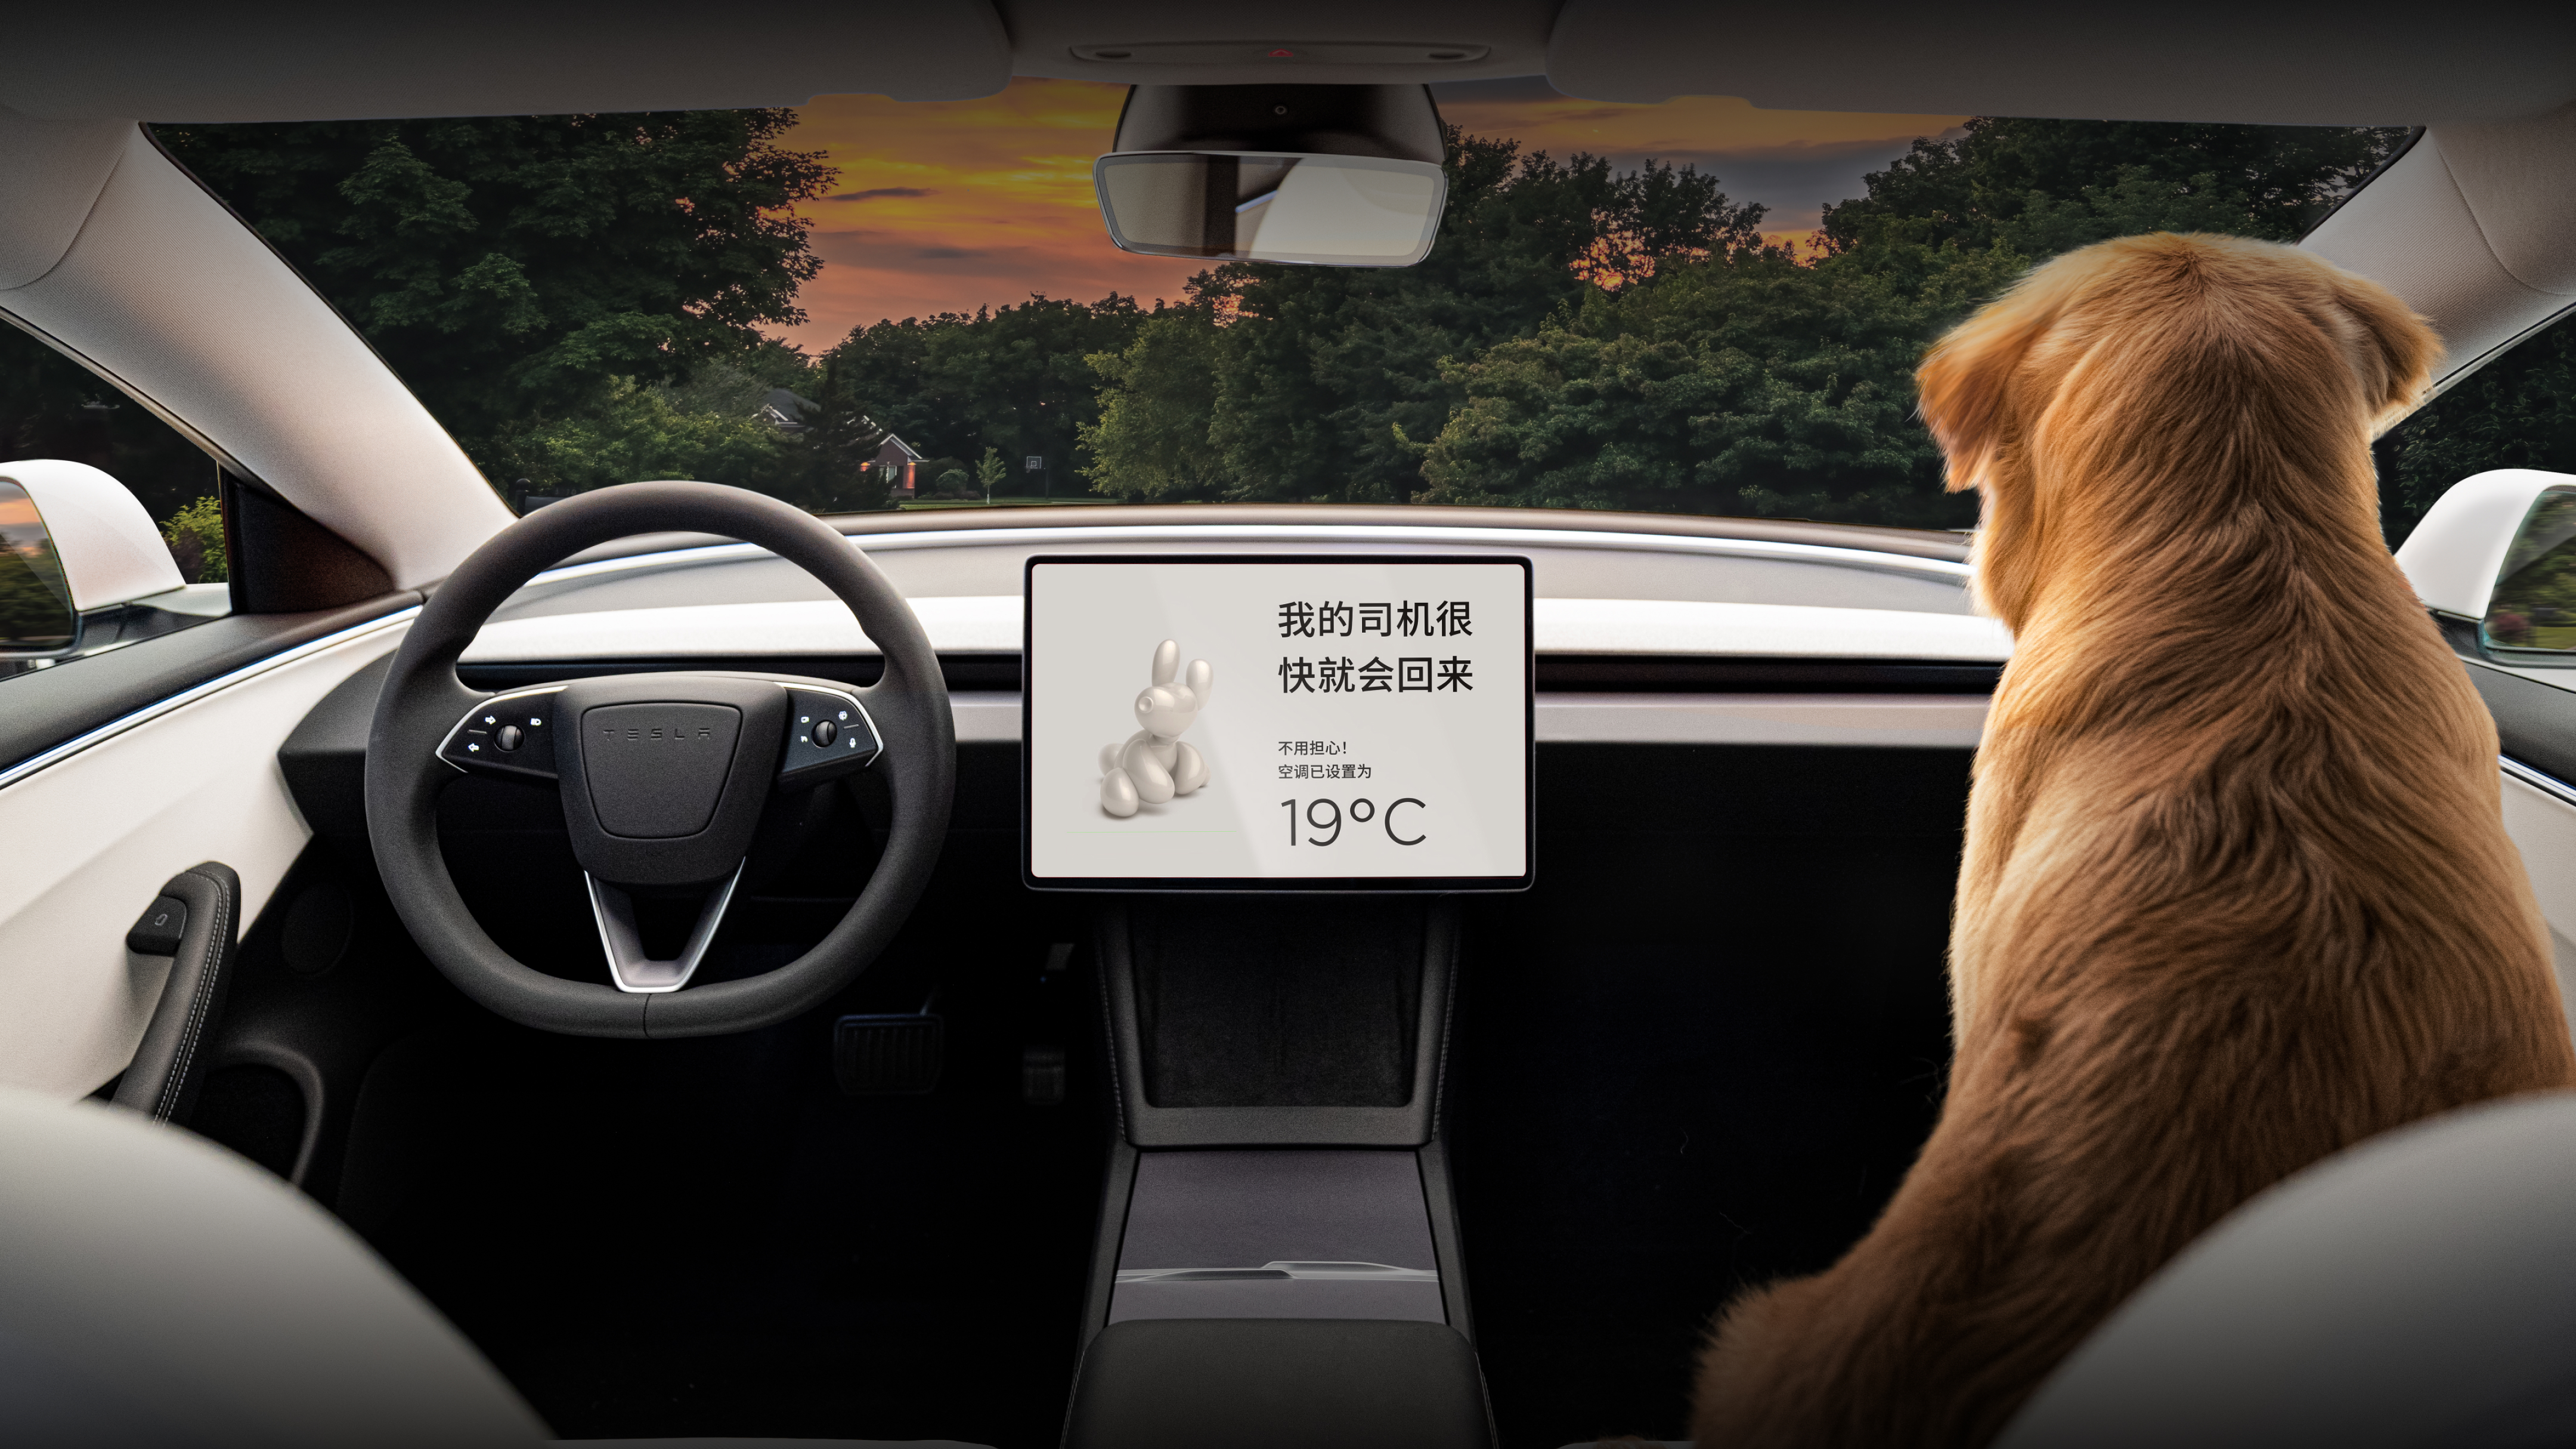 中央触摸屏，显示“我的司机很快就会回来”，前排座椅上有一条金毛猎犬。